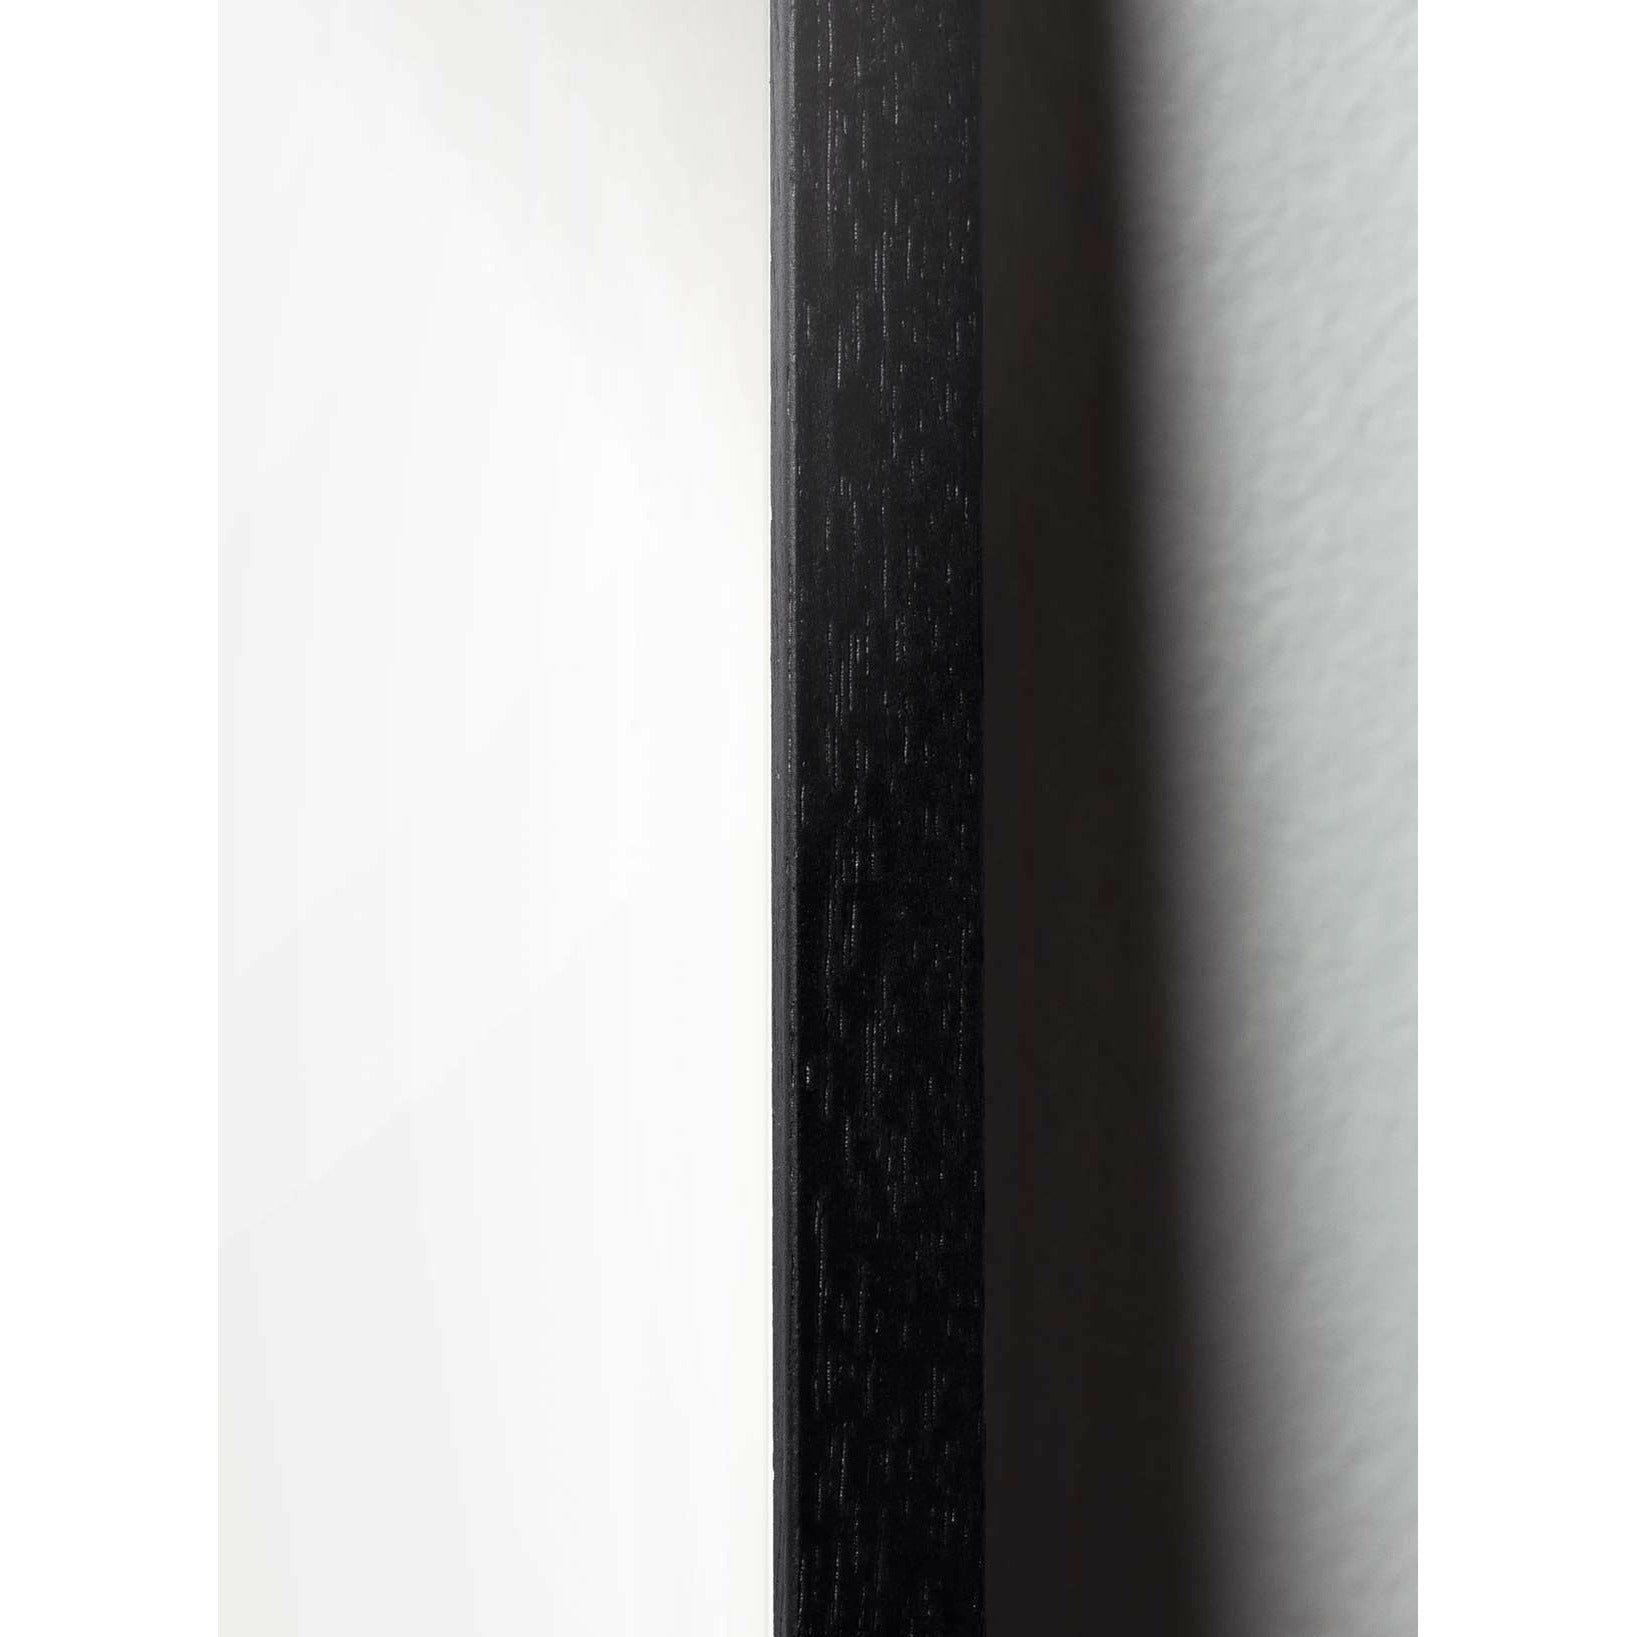 Brainchild Egg Cross Format Poster, Frame In Black Lacquered Wood 70 X100 Cm, Black